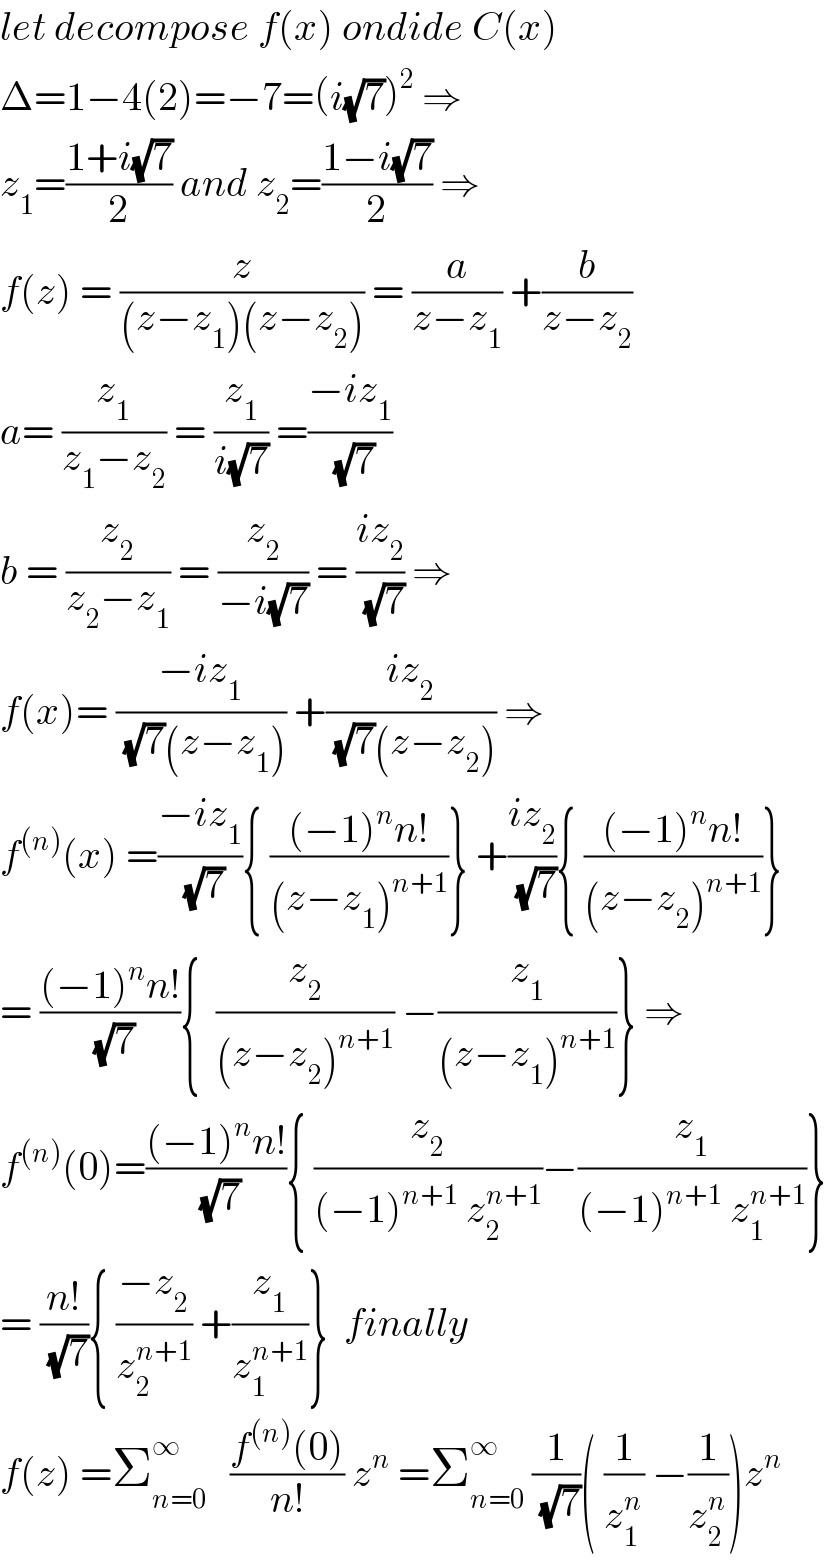 let decompose f(x) ondide C(x)  Δ=1−4(2)=−7=(i(√7))^2  ⇒  z_1 =((1+i(√7))/2) and z_2 =((1−i(√7))/2) ⇒  f(z) = (z/((z−z_1 )(z−z_2 ))) = (a/(z−z_1 )) +(b/(z−z_2 ))  a= (z_1 /(z_1 −z_2 )) = (z_1 /(i(√7))) =((−iz_1 )/(√7))  b = (z_2 /(z_2 −z_1 )) = (z_2 /(−i(√7))) = ((iz_2 )/(√7)) ⇒  f(x)= ((−iz_1 )/((√7)(z−z_1 ))) +((iz_2 )/((√7)(z−z_2 ))) ⇒  f^((n)) (x) =((−iz_1 )/(√7)){ (((−1)^n n!)/((z−z_1 )^(n+1) ))} +((iz_2 )/(√7)){ (((−1)^n n!)/((z−z_2 )^(n+1) ))}  = (((−1)^n n!)/(√7)){  (z_2 /((z−z_2 )^(n+1) )) −(z_1 /((z−z_1 )^(n+1) ))} ⇒  f^((n)) (0)=(((−1)^n n!)/(√7)){ (z_2 /((−1)^(n+1)  z_2 ^(n+1) ))−(z_1 /((−1)^(n+1)  z_1 ^(n+1) ))}  = ((n!)/(√7)){ ((−z_2 )/z_2 ^(n+1) ) +(z_1 /z_1 ^(n+1) )}  finally   f(z) =Σ_(n=0) ^∞    ((f^((n)) (0))/(n!)) z^n  =Σ_(n=0) ^∞  (1/(√7))( (1/z_1 ^n ) −(1/z_2 ^n ))z^n   